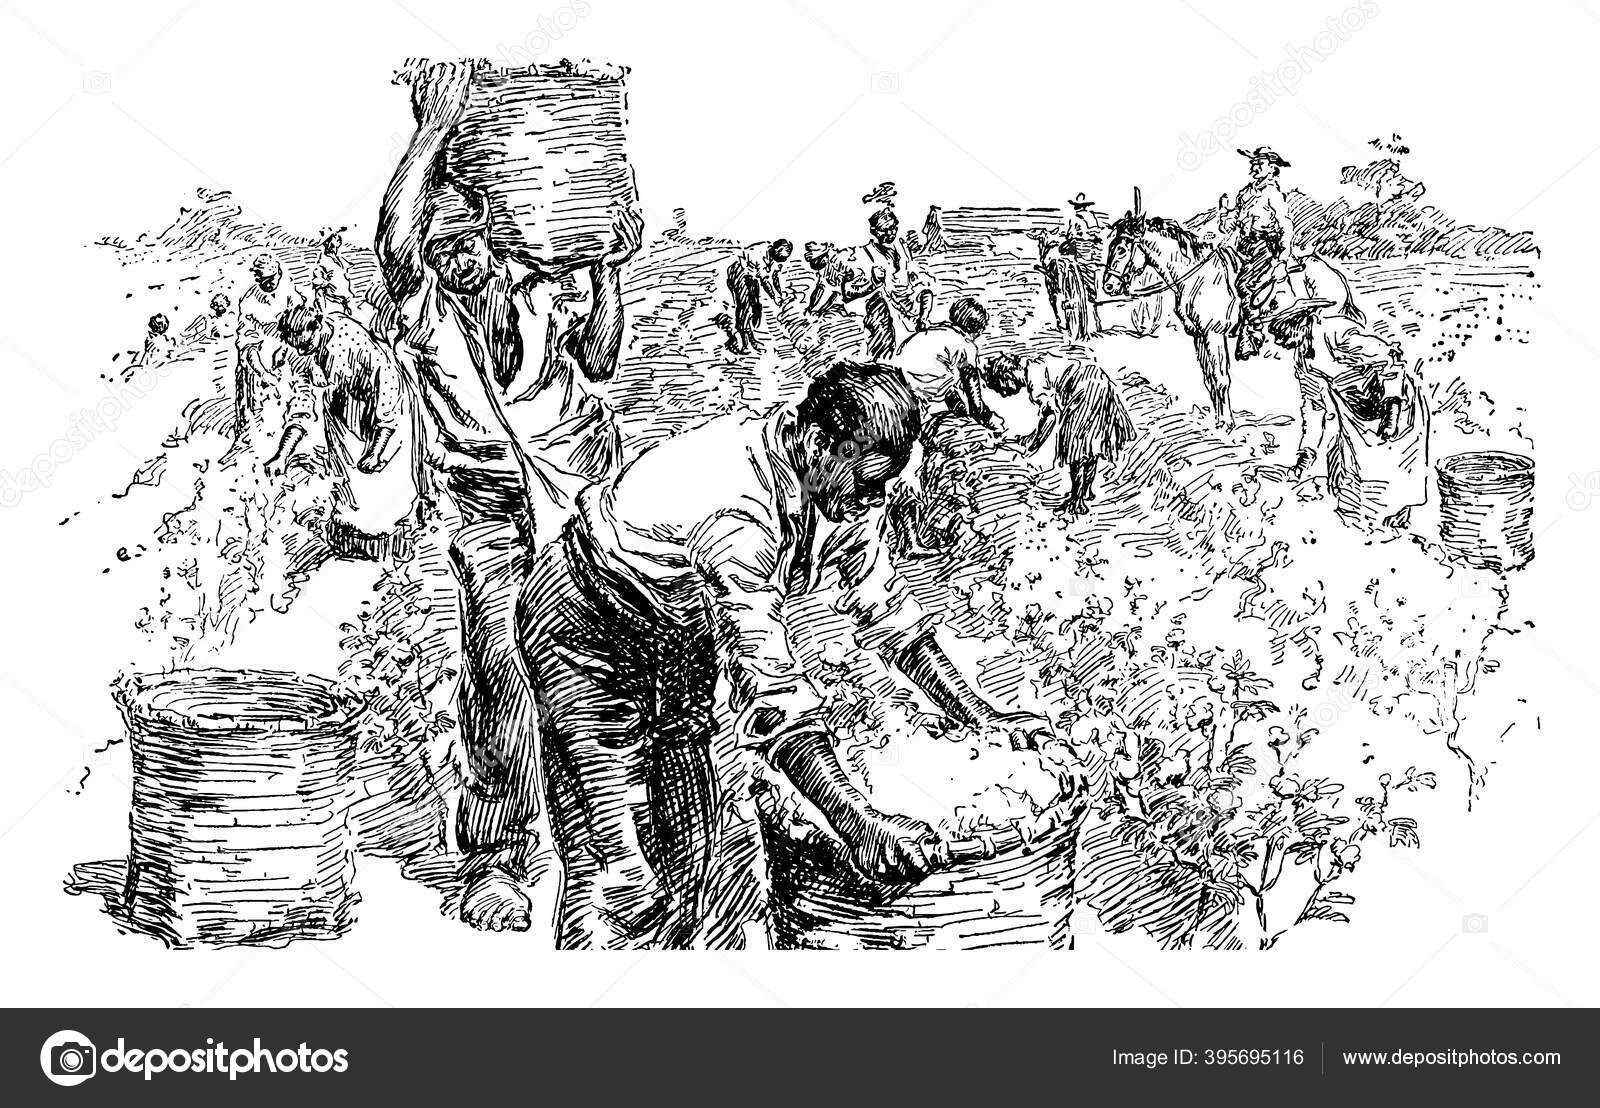 90+ Plantação De Algodão Ilustração de stock, gráficos vetoriais e